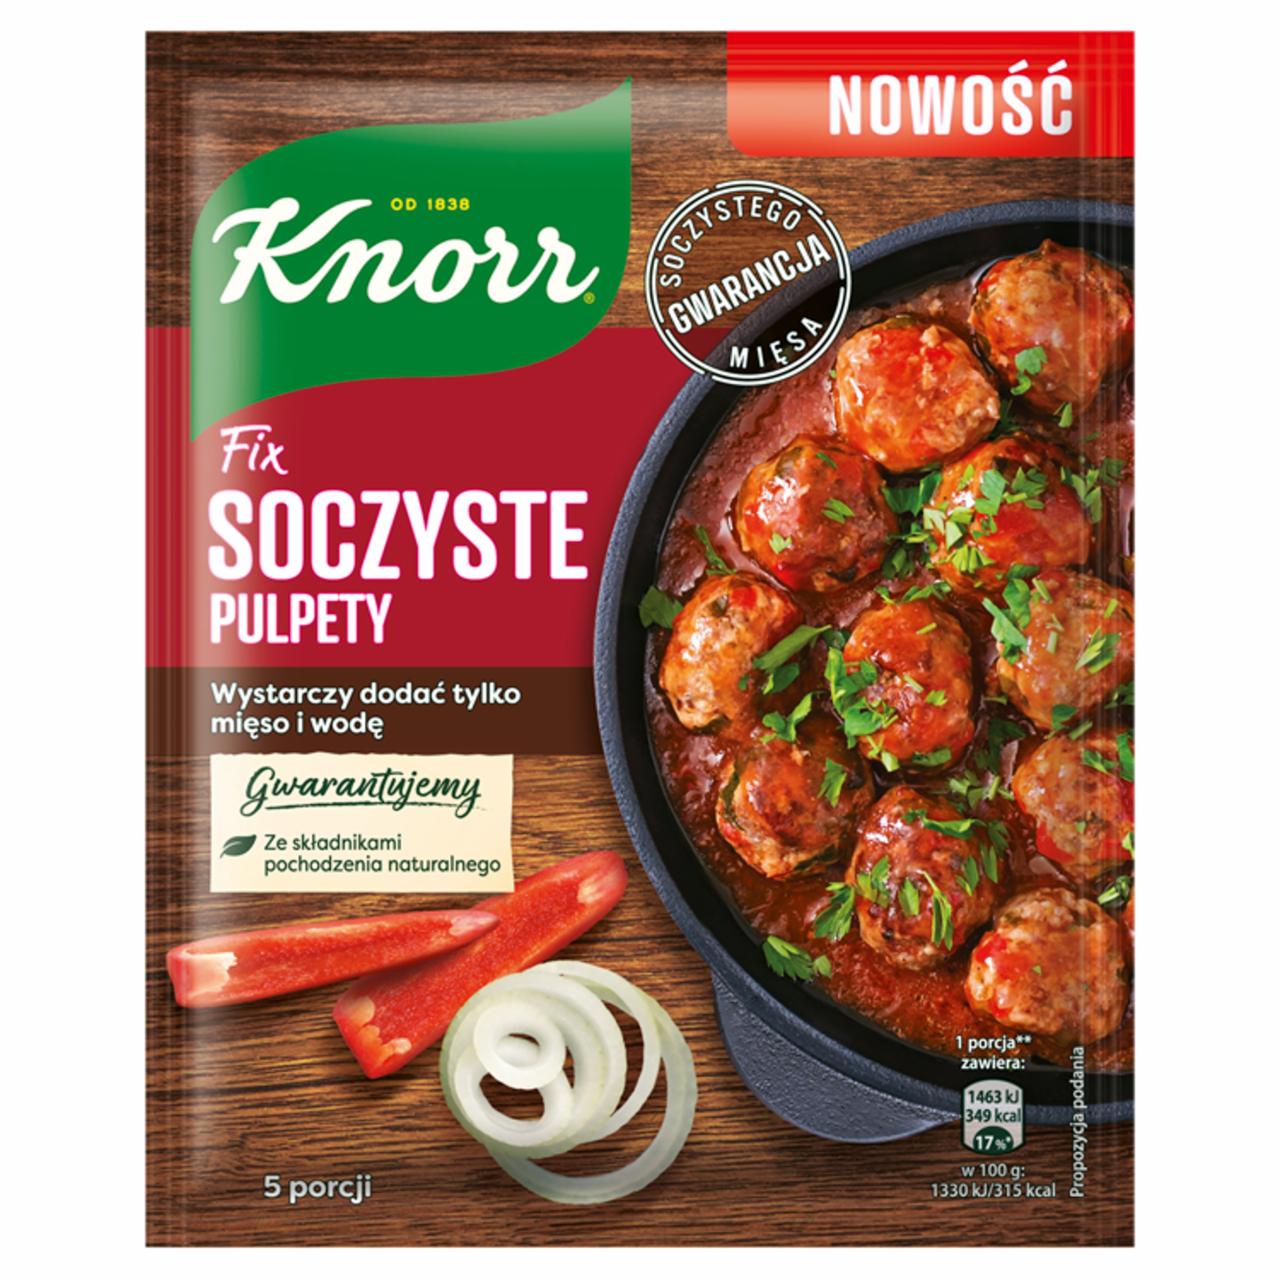 Zdjęcia - Knorr Fix soczyste pulpety 70 g